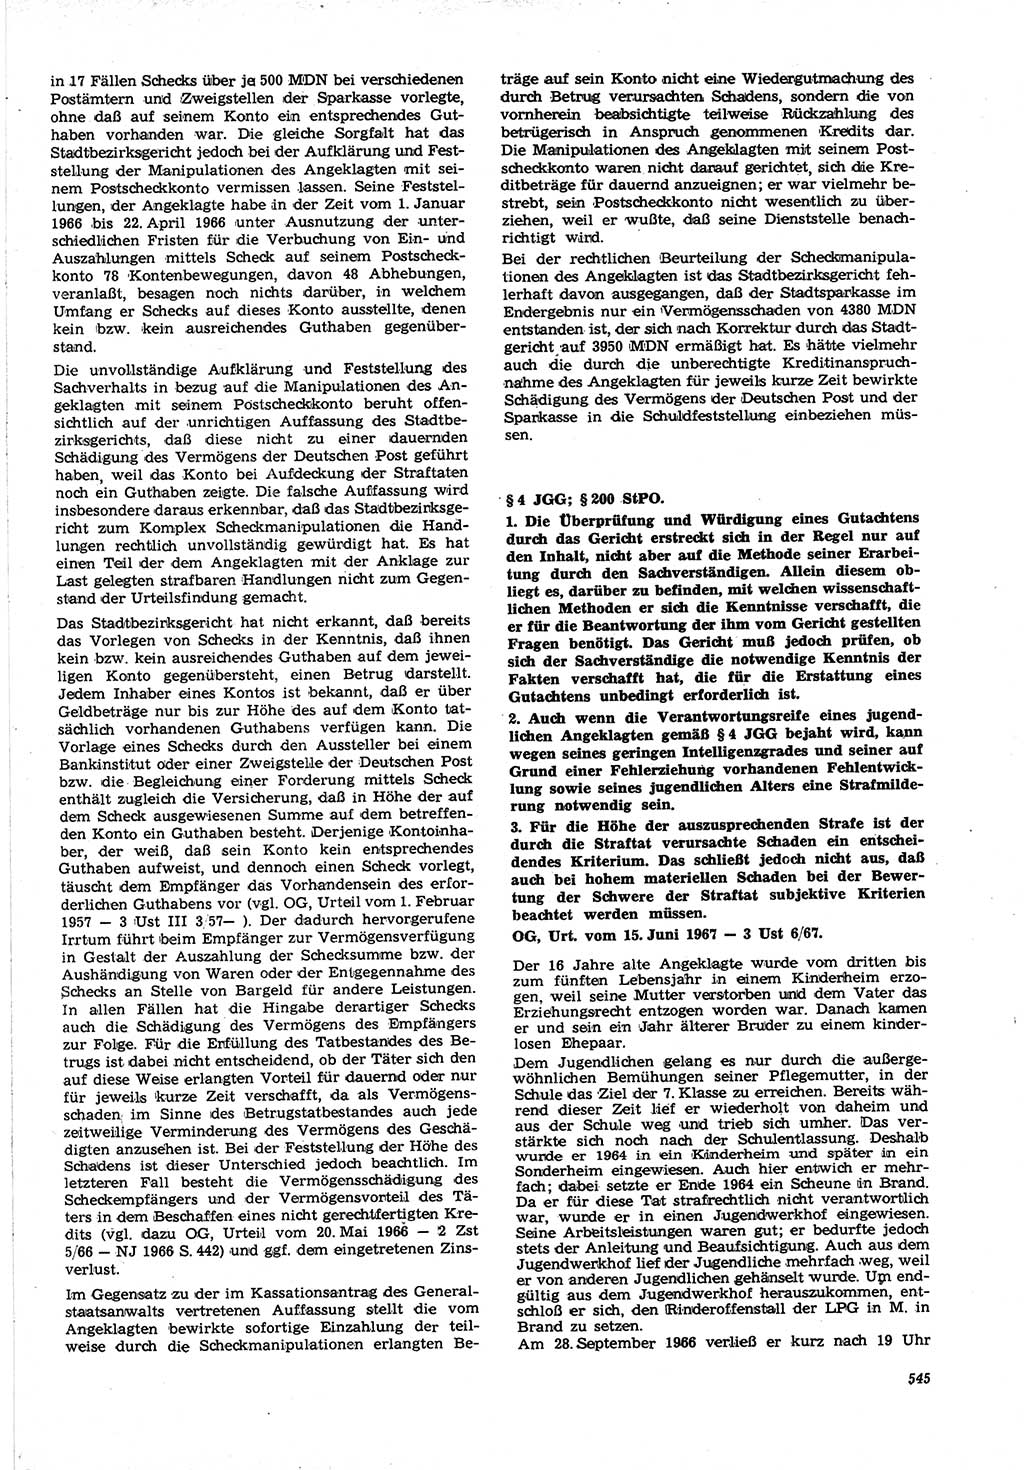 Neue Justiz (NJ), Zeitschrift für Recht und Rechtswissenschaft [Deutsche Demokratische Republik (DDR)], 21. Jahrgang 1967, Seite 545 (NJ DDR 1967, S. 545)